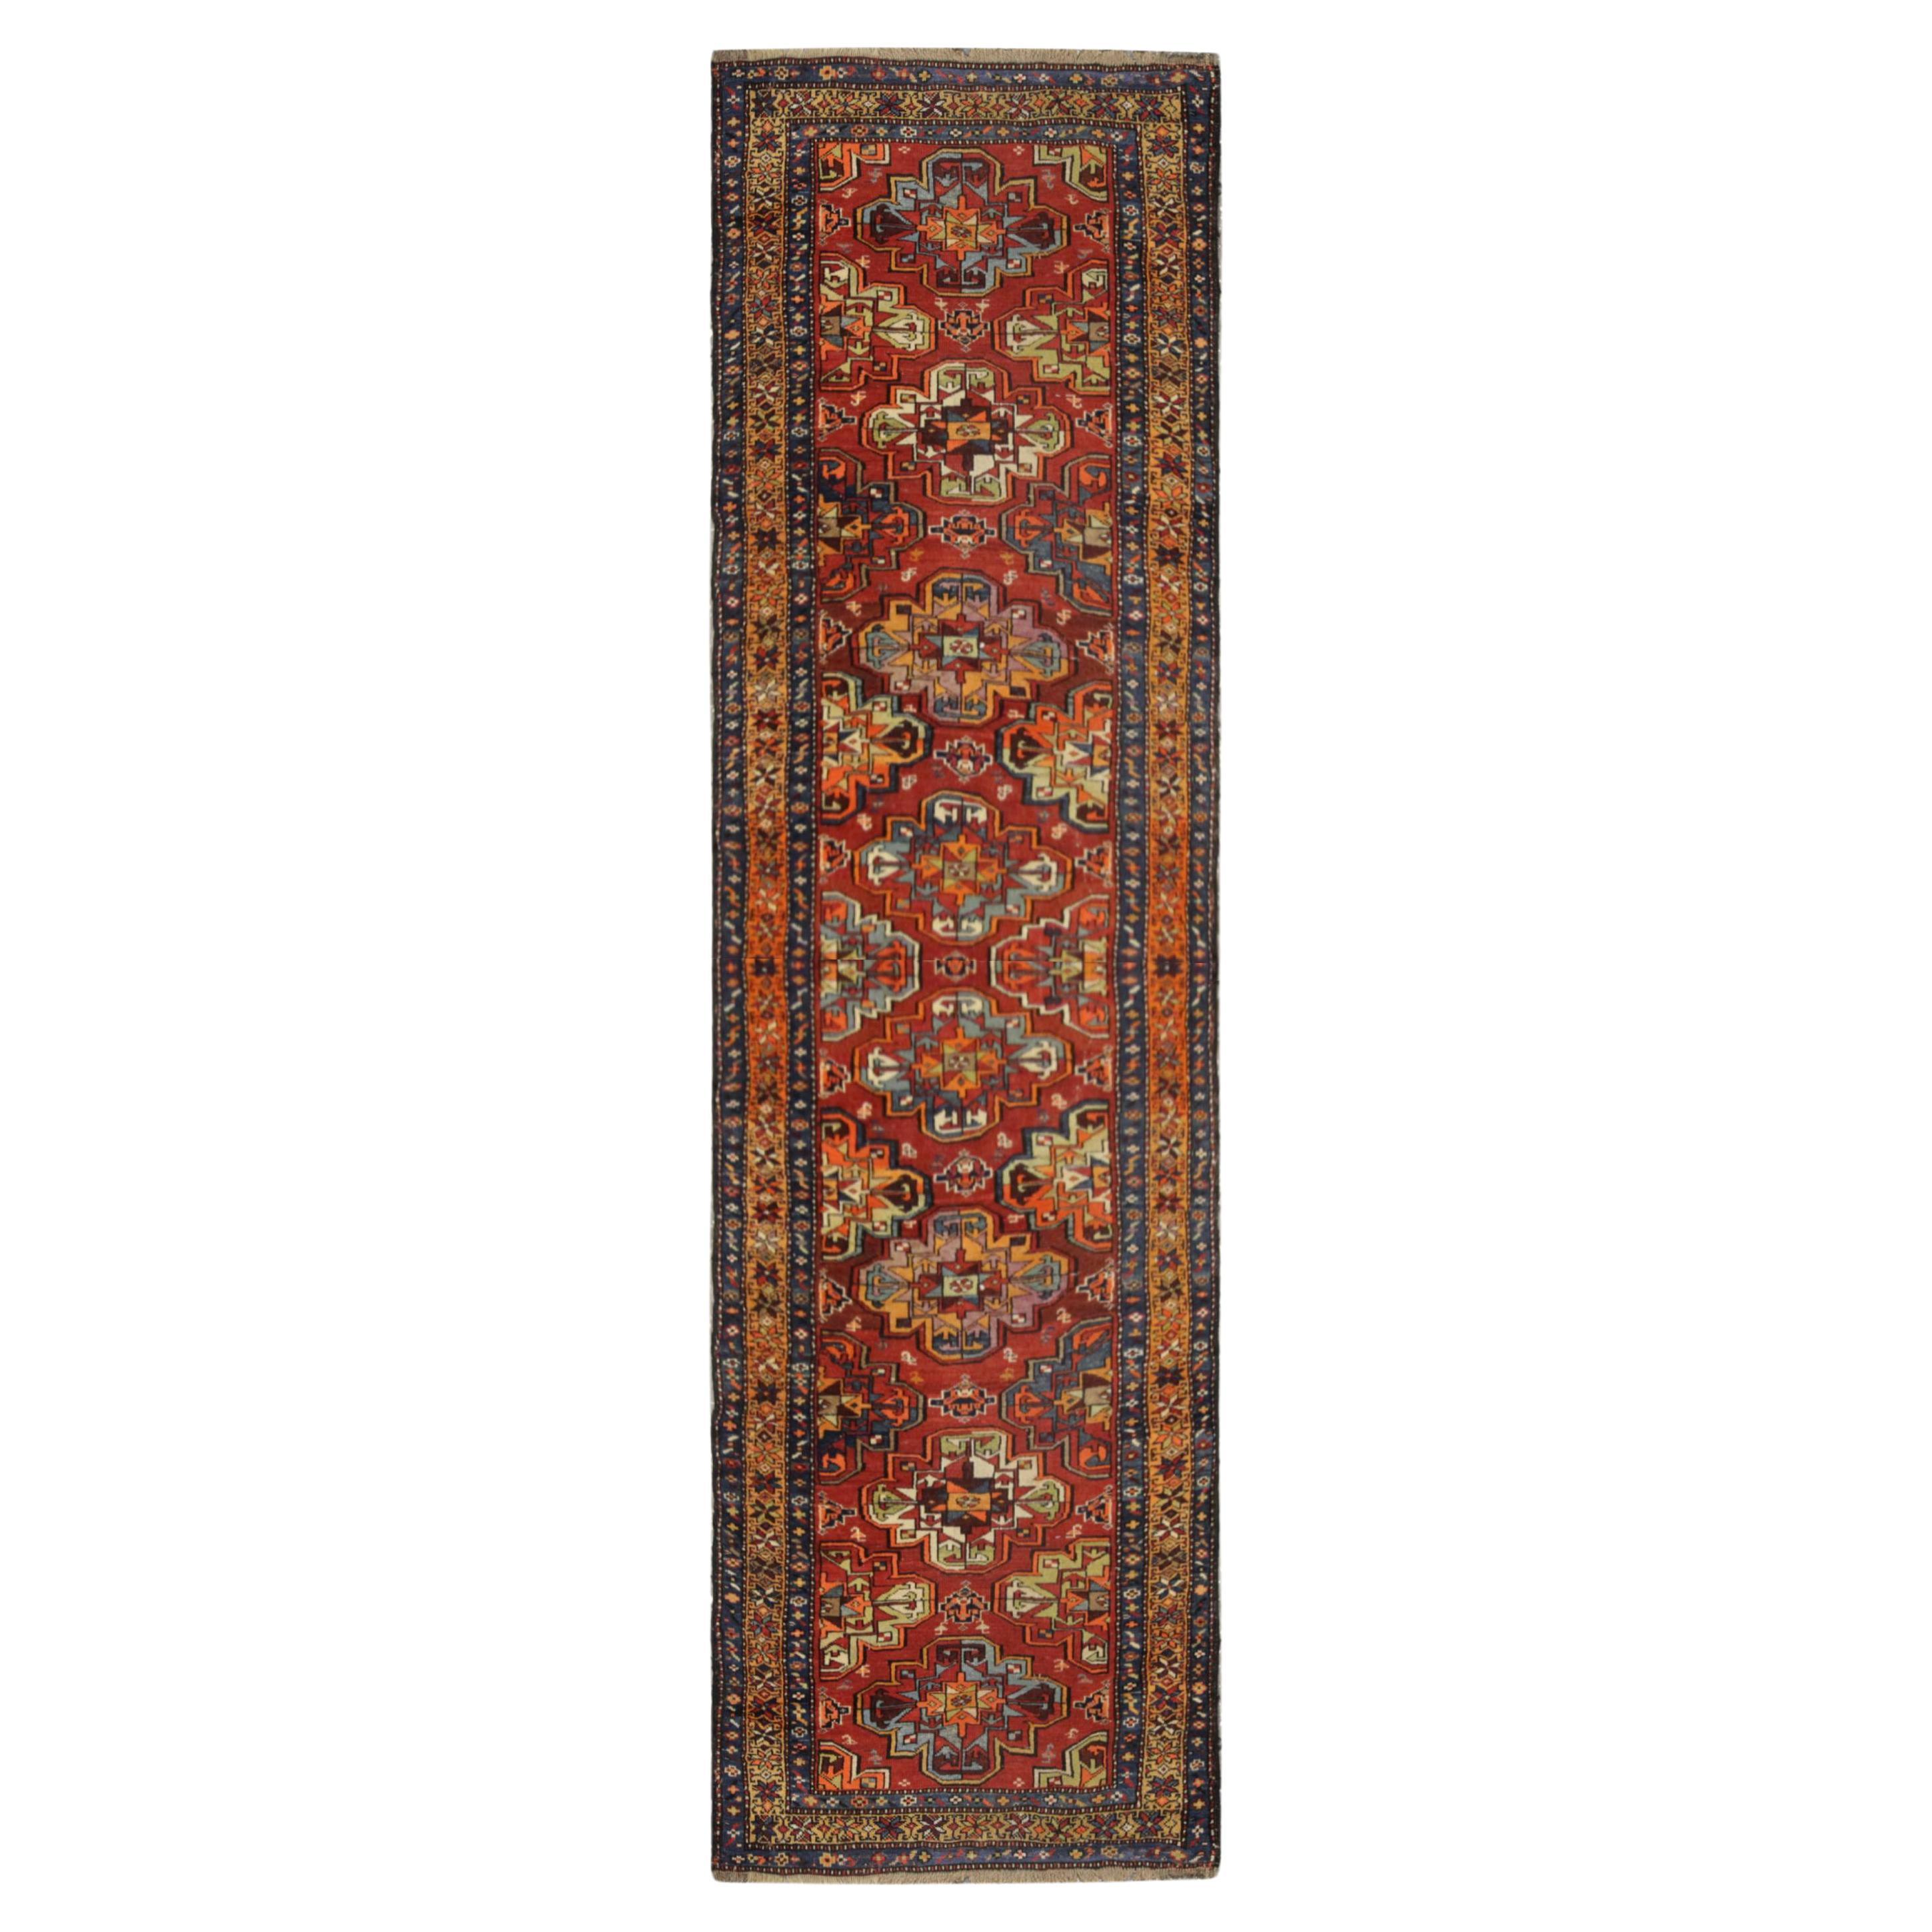 Antique Rug, Turkmen Oriental Runner, Living Room Carpet Runner For Sale